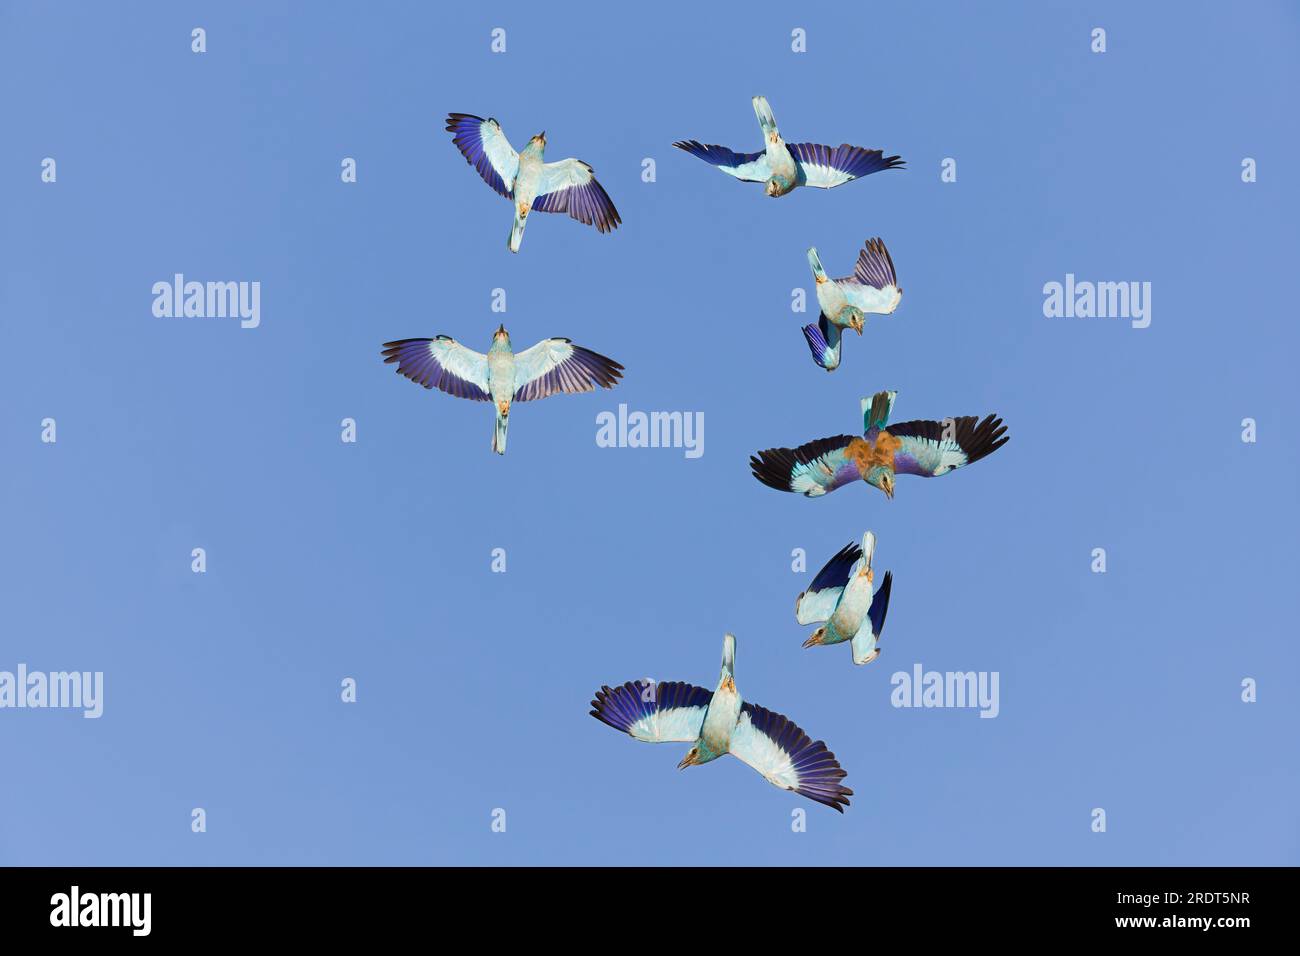 Rouleau européen Coracias garrulus, adulte volant en vol d'affichage, Tolède, Espagne, juillet, image composite Banque D'Images